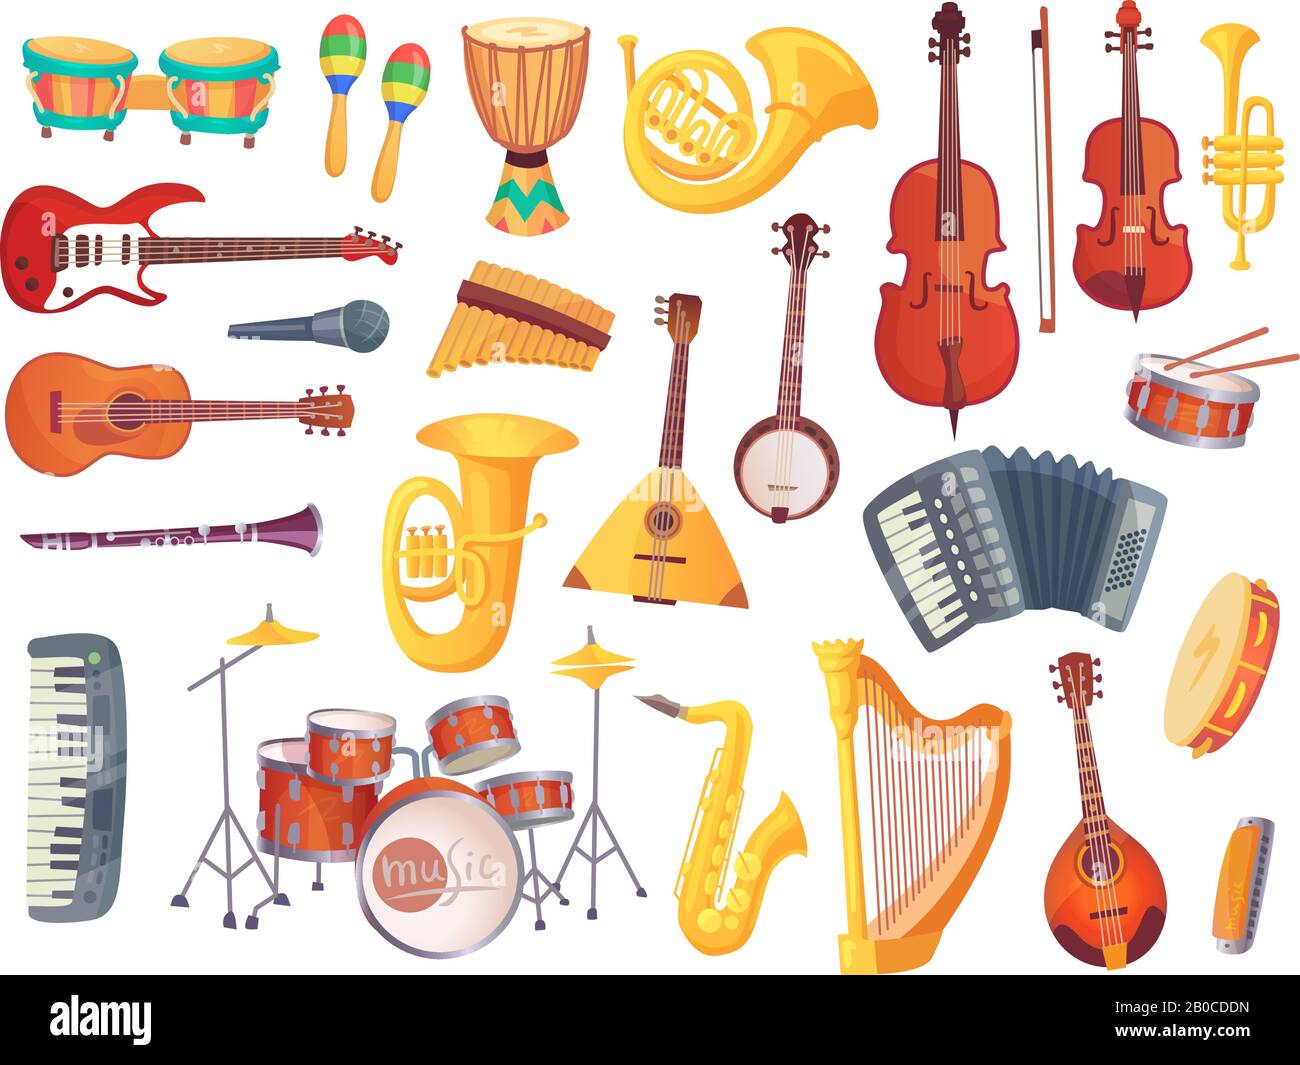 Cartoon-Musikinstrumente, Gitarren, Bongo-Schlagzeug, Cello, Saxofon, Mikrofon, Drum-Kit isoliert. Vektorsammlung für Musikinstrumente Stock Vektor